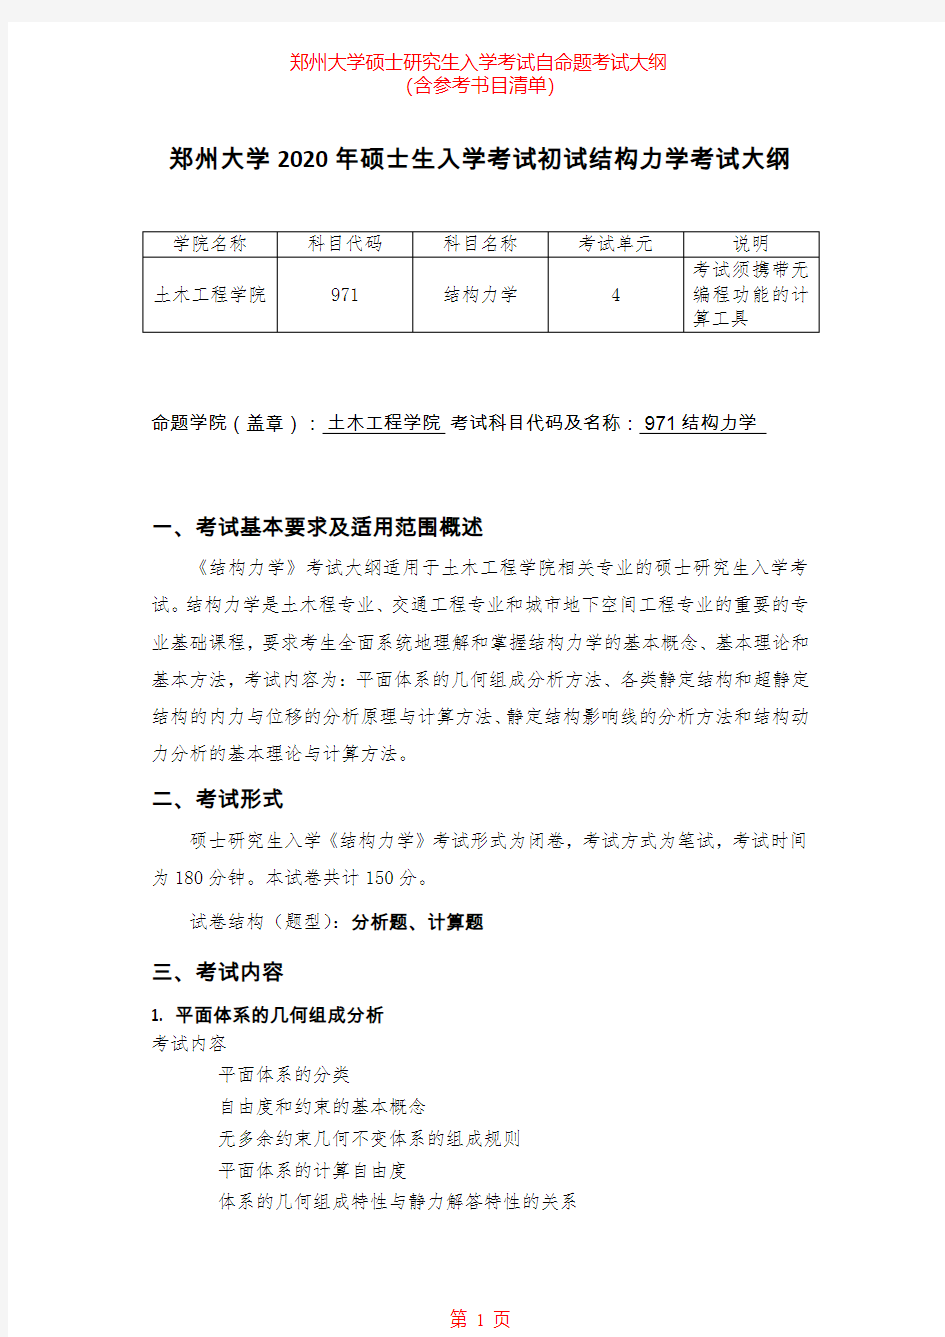 2020年郑州大学971结构力学(一)考研专业课考试大纲(含参考书目)